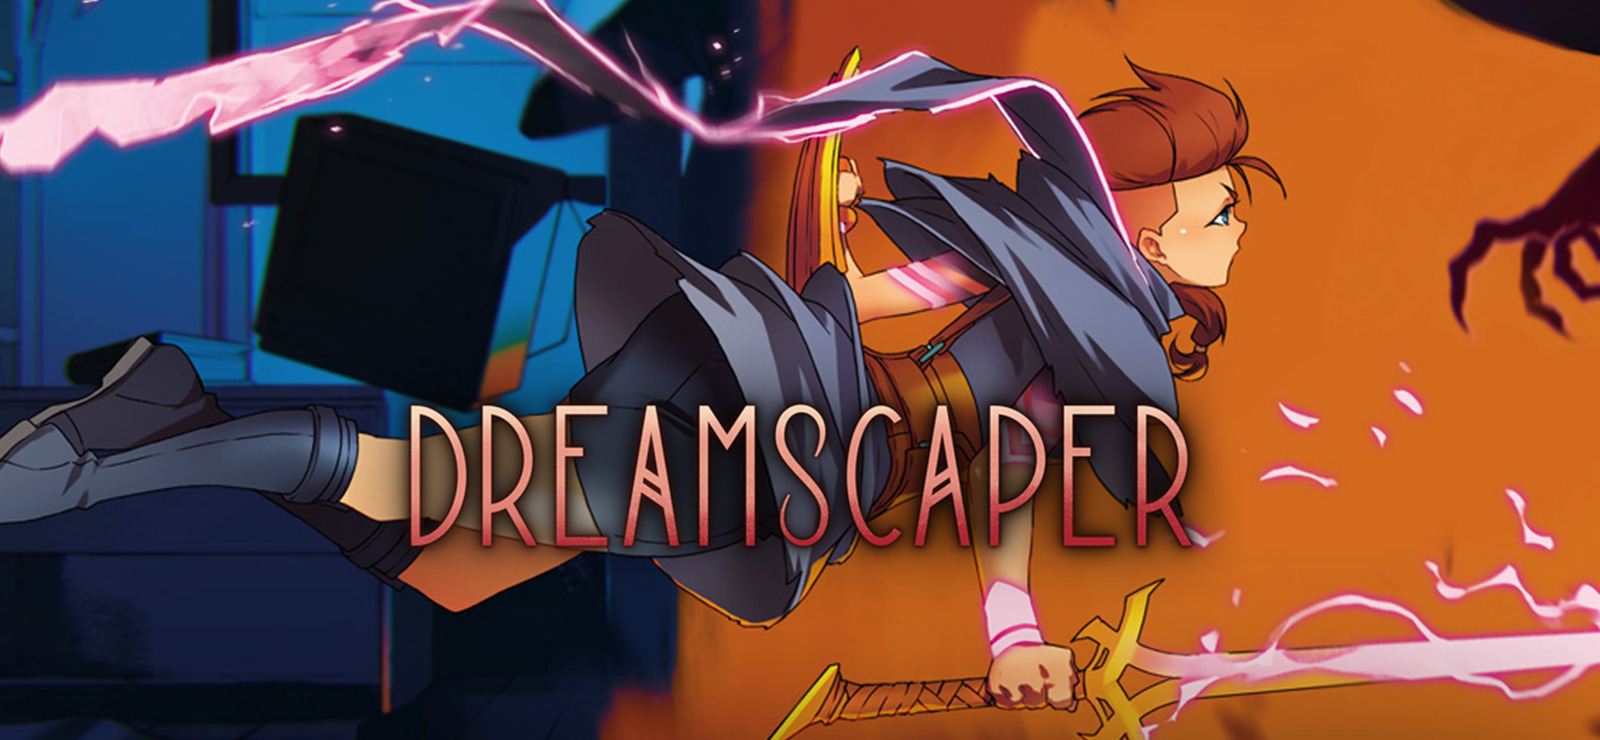 download the last version for mac Dreamscaper